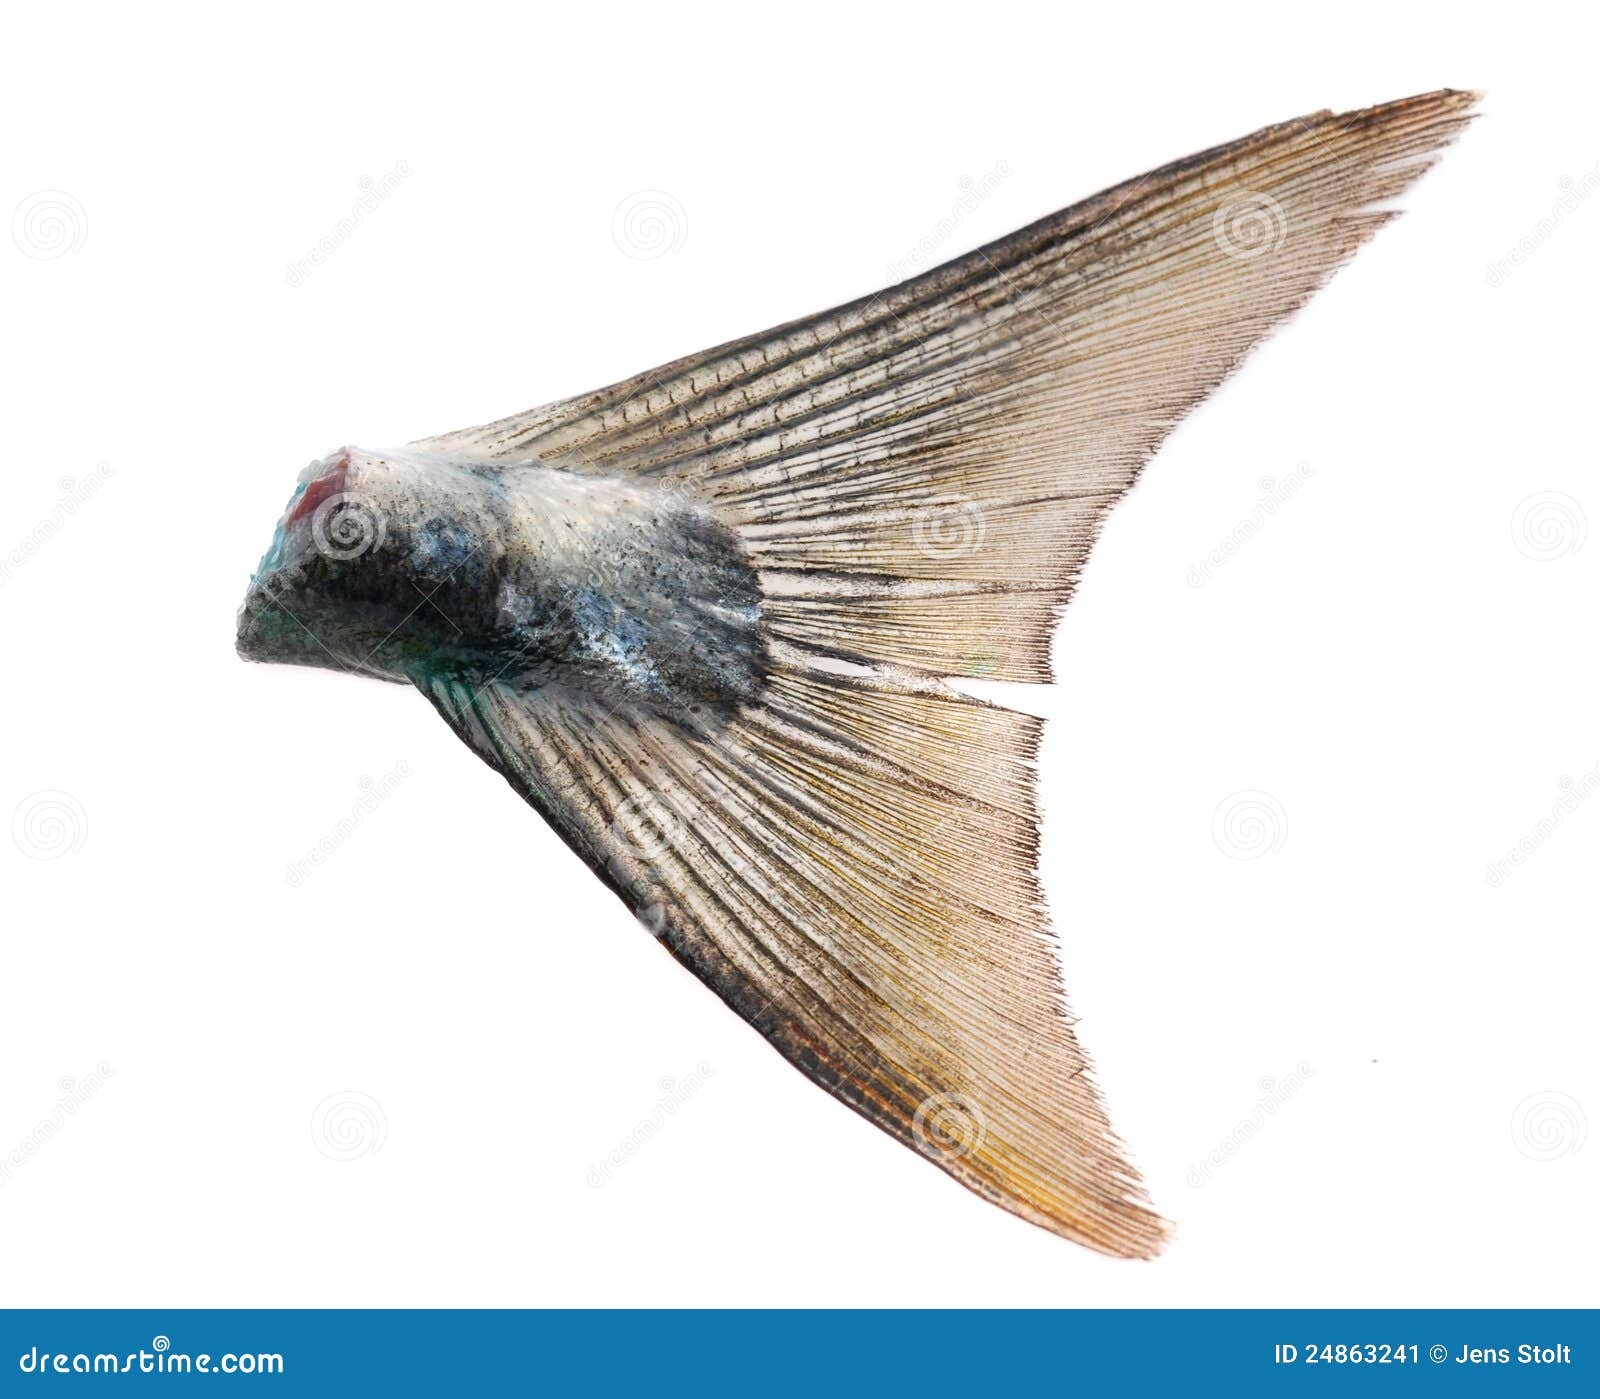 Fish tail stock image. Image of agulha, eating, mediterranean